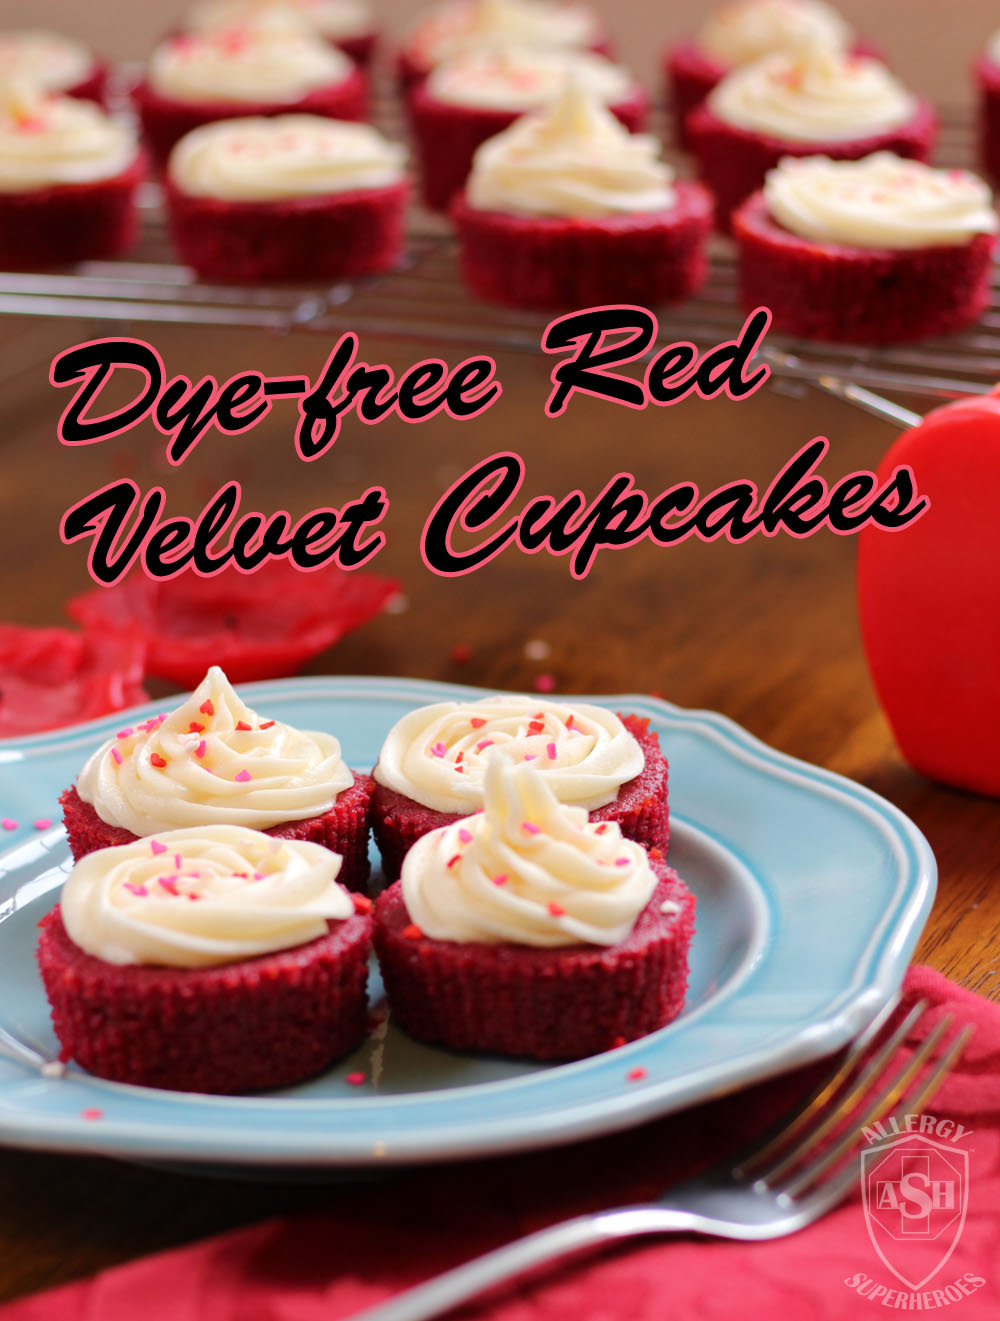 Dye-free, Allergy-Friendly Red Velvet Cupcakes from Allergy Superheroes